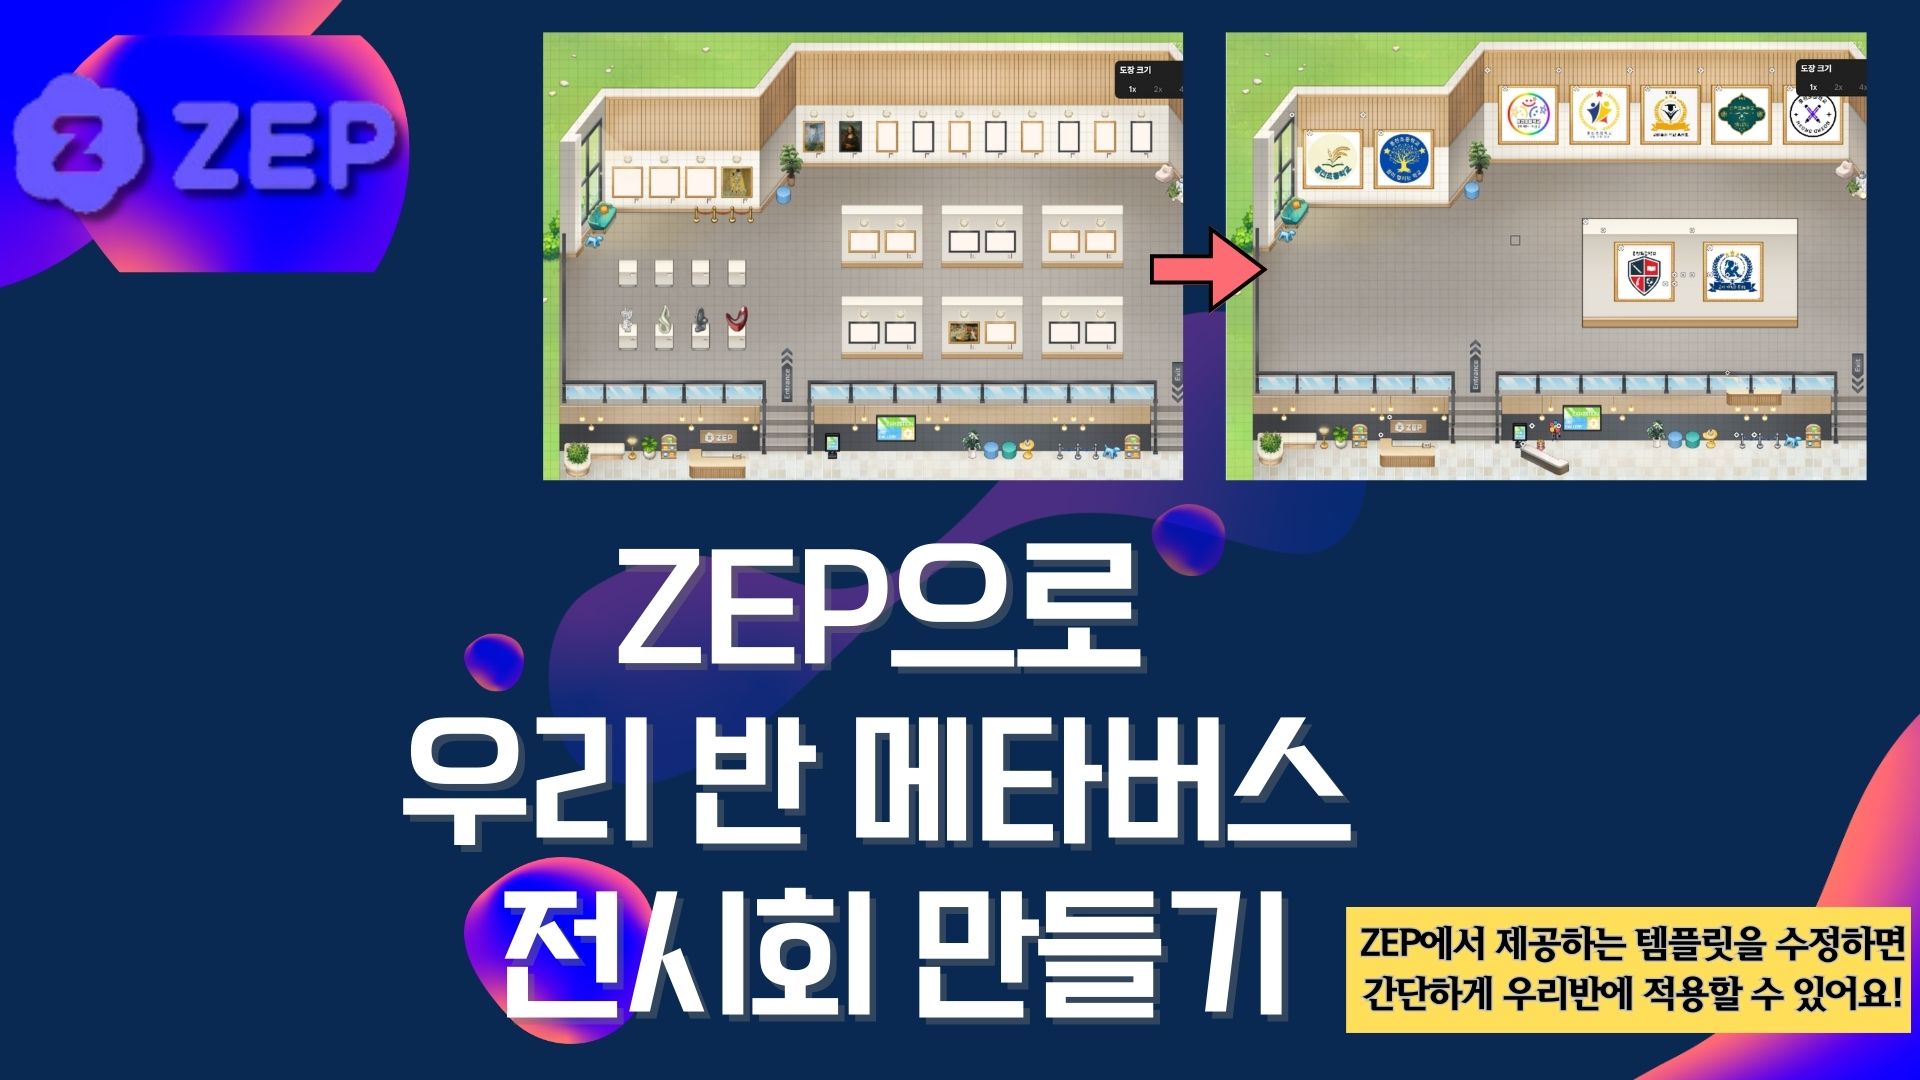 ZEP으로 우리반 메타버스 전시회 만들기 (기본) -4기